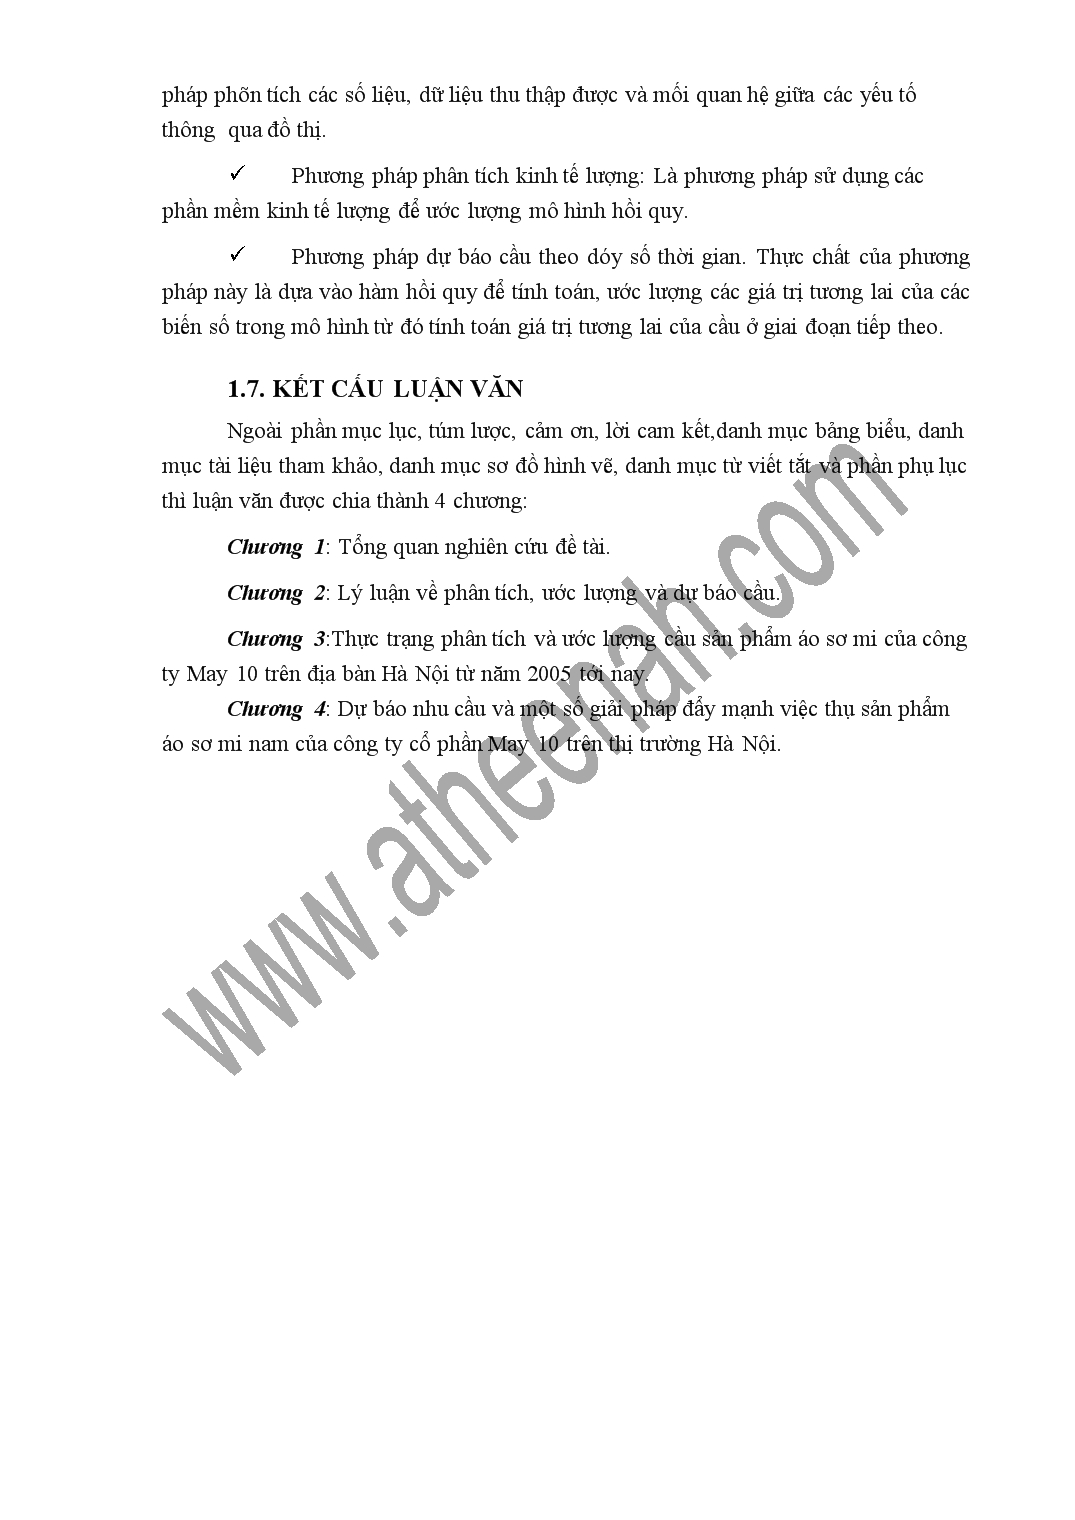 Luận văn Phân tích và dự báo cầu sản phẩm áo sơ mi nam của công ty cổ phần May 10 trên địa bàn Hà Nội tới năm 2015 trang 5